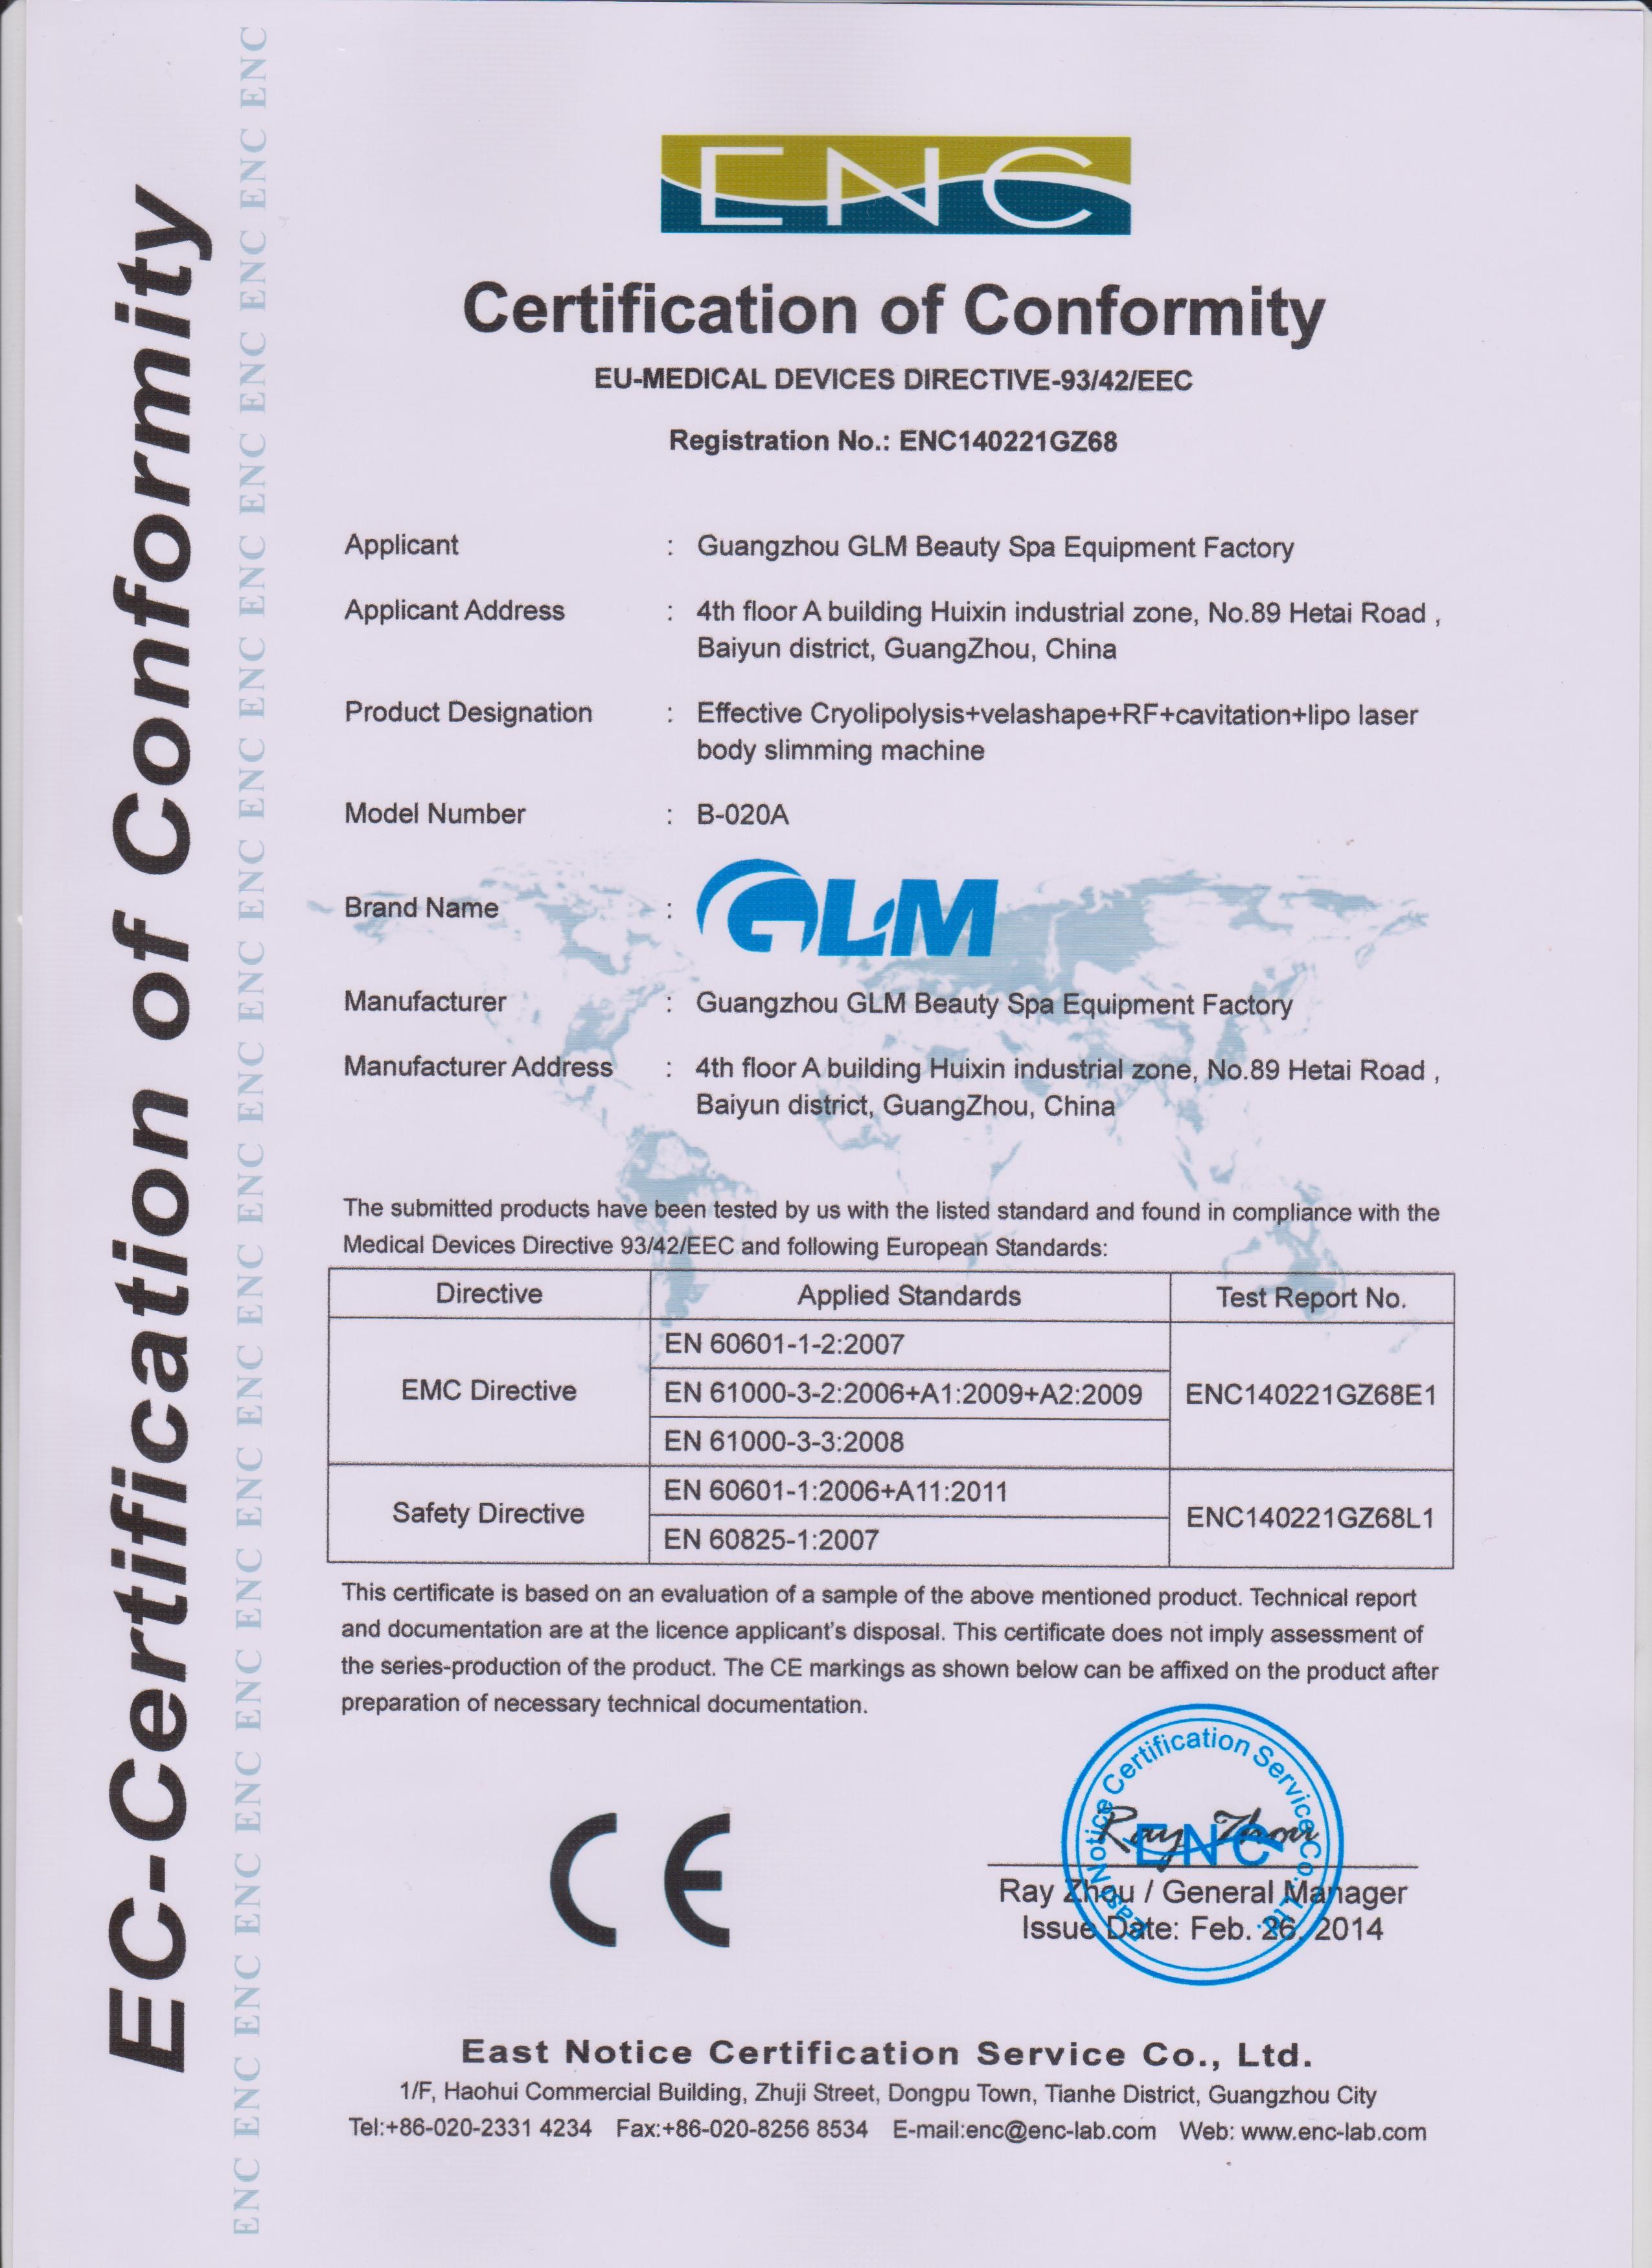 Guangzhou GLM Beauty Spa Equipment Factory Certifications